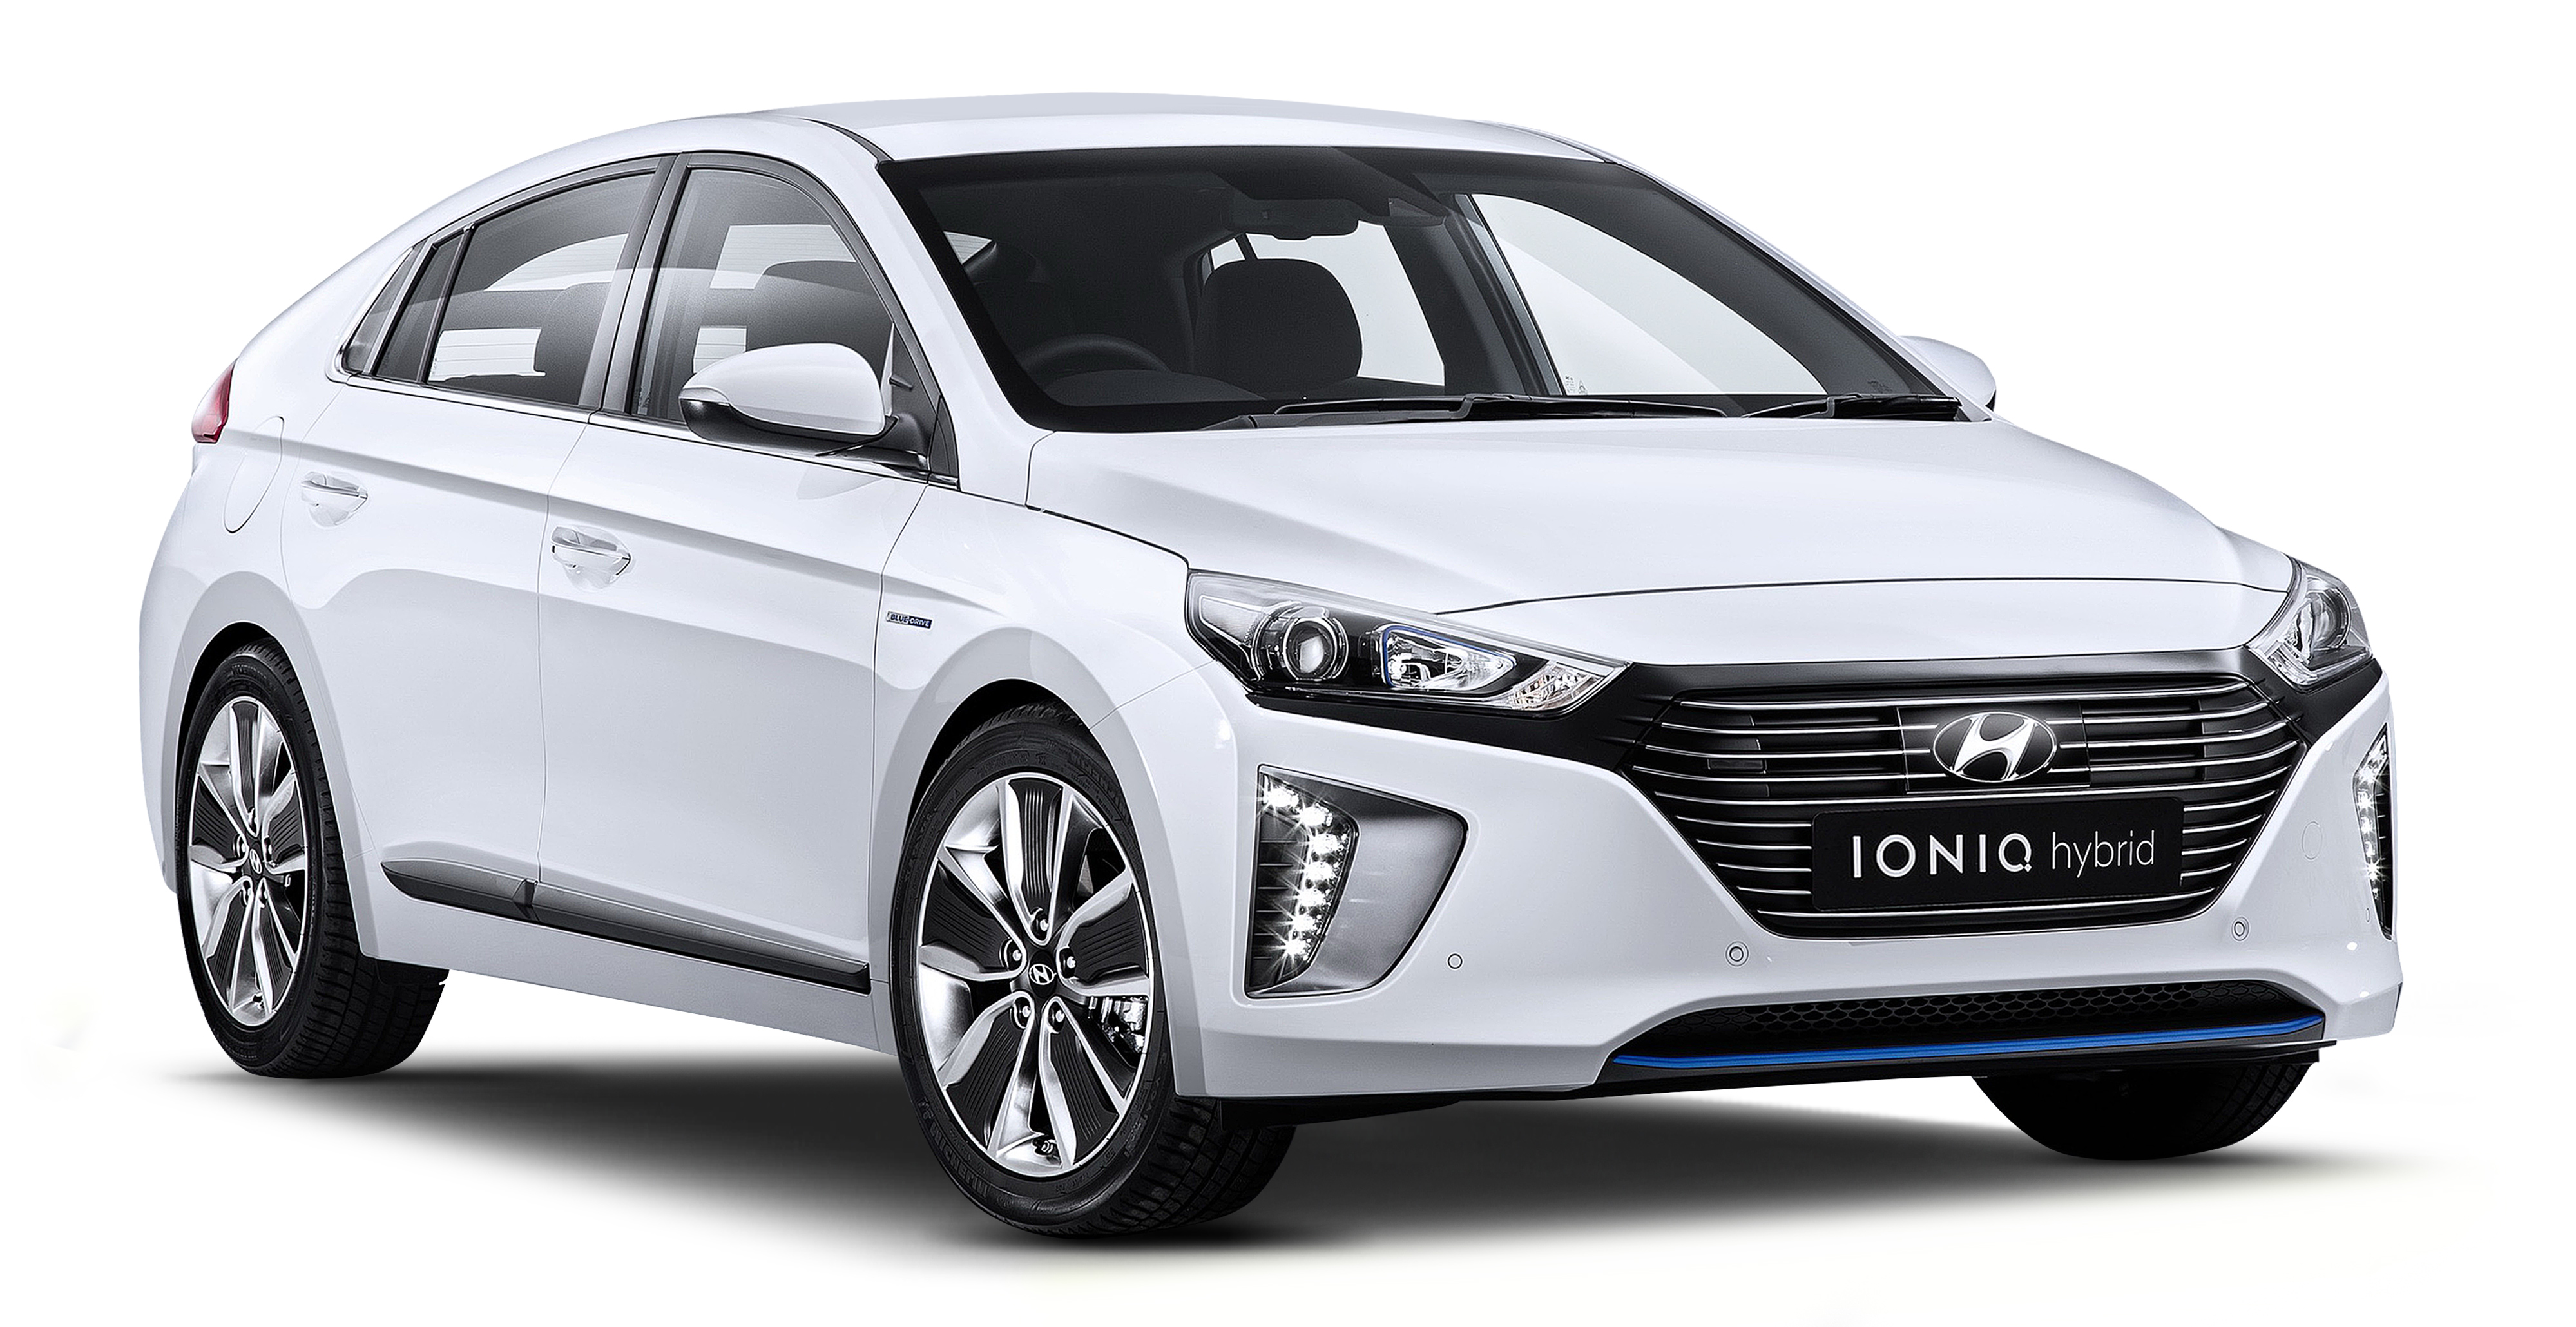 ad-hyundai-year-end-bonanza-is-back-buy-new-car-enjoy-cash-rebates